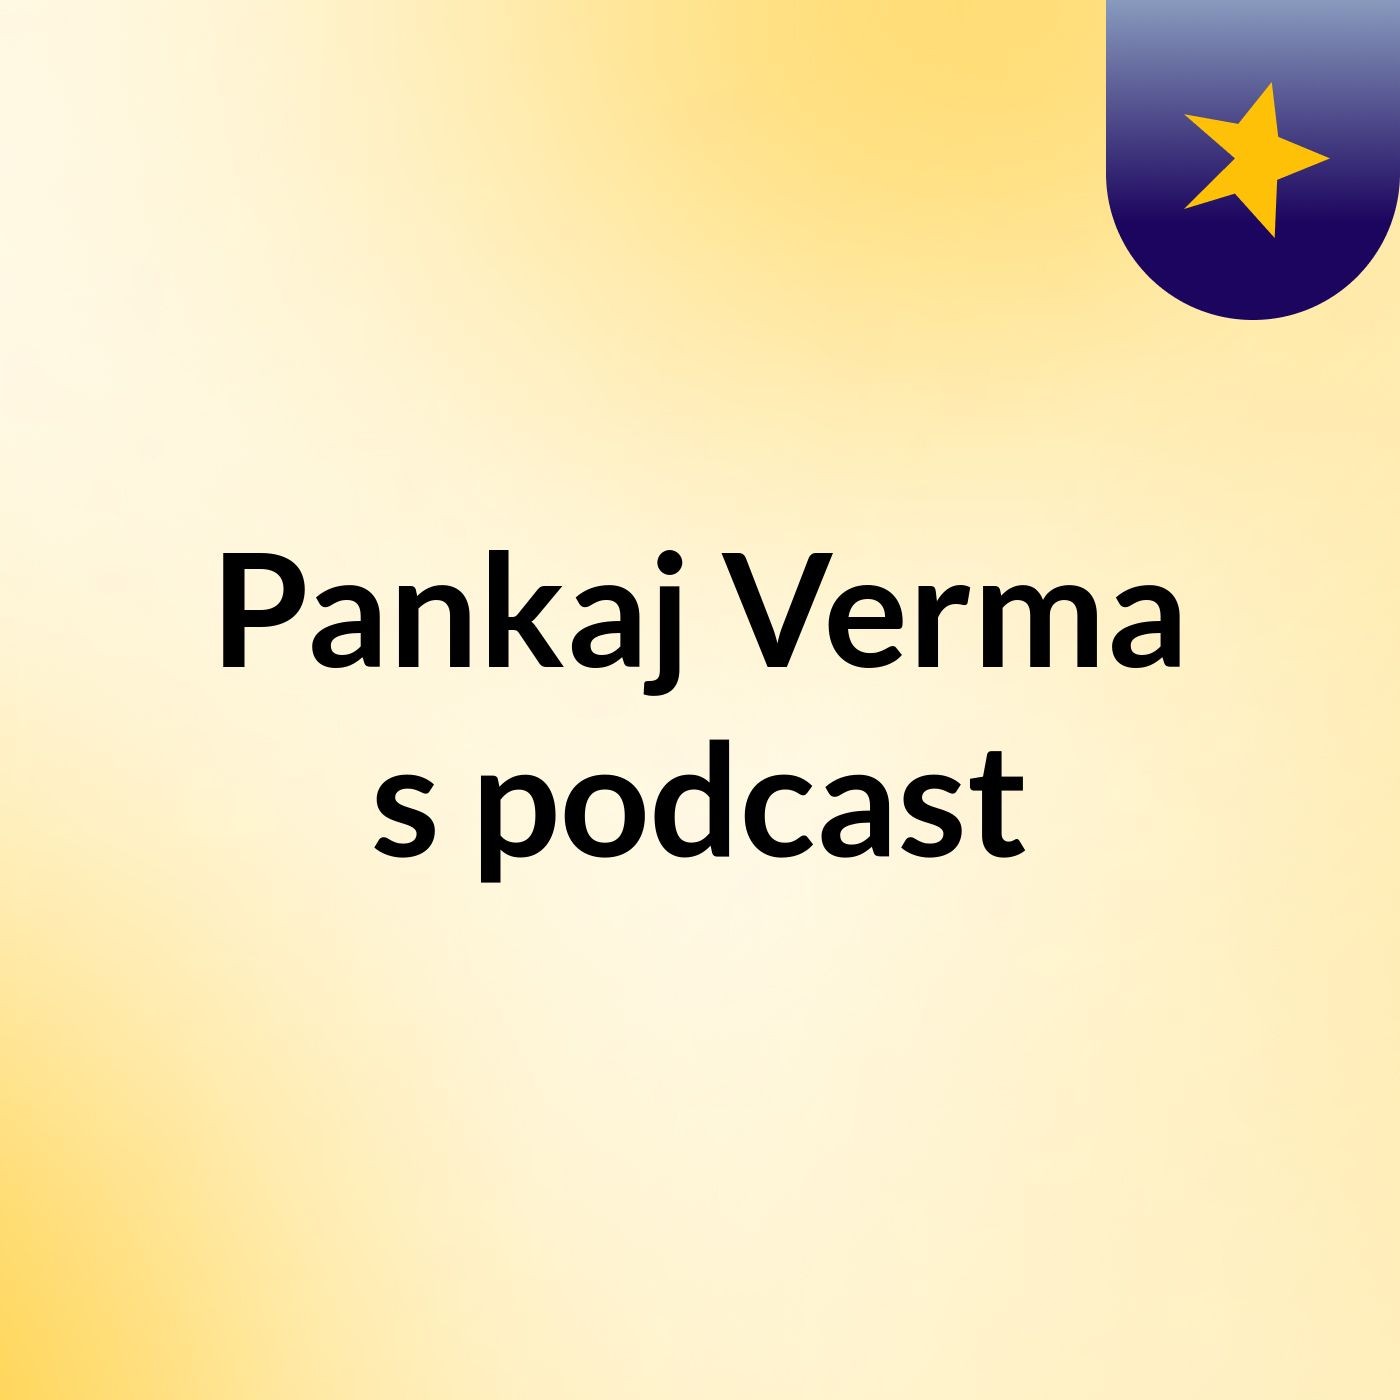 Episode 2 - Pankaj Verma's podcast